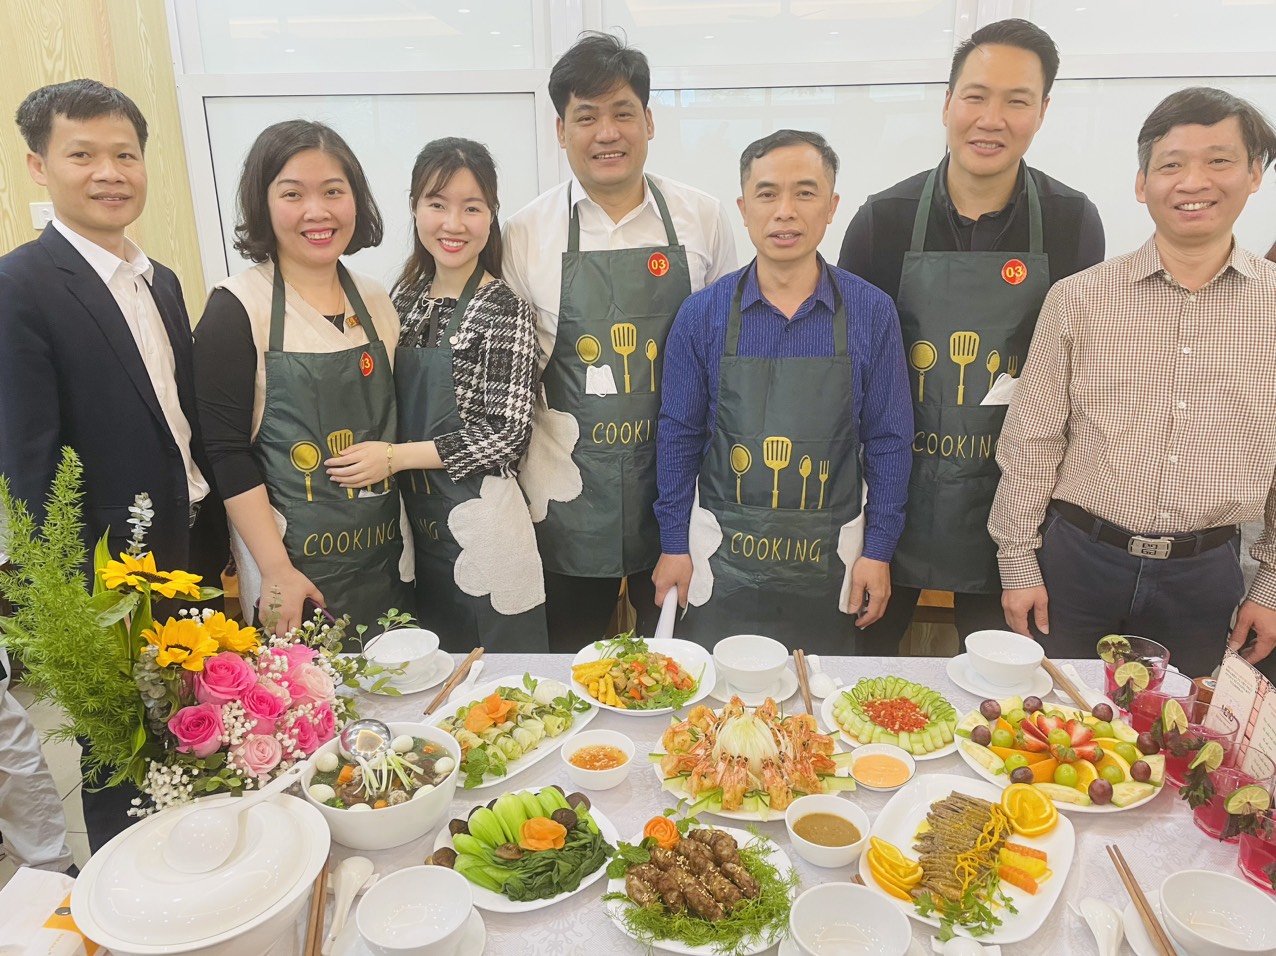 Liên quân Trung tâm Việt Nhật - Khoa Điện - Phòng công tác sv - Trạm y tế - Khoa GDTC - GDQP giành giải Khuyến khích cuộc thi nấu ăn, cắm hoa kỷ niệm ngày quốc tế phụ nữ 8/3